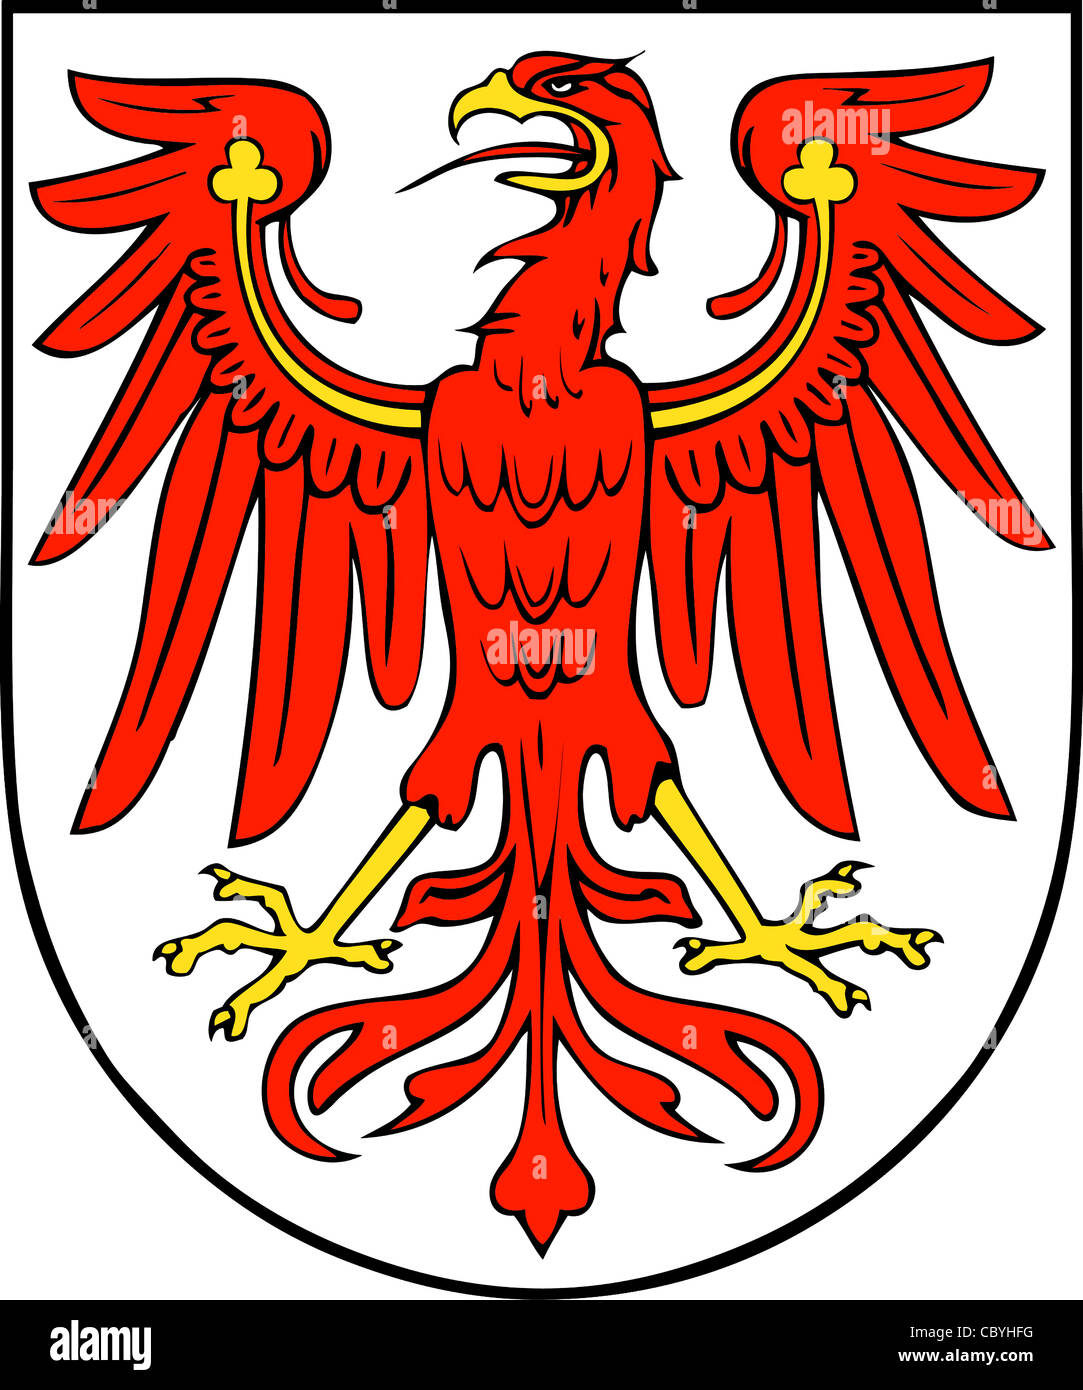 Escudo de armas del estado federal alemán de Brandenburgo. Foto de stock